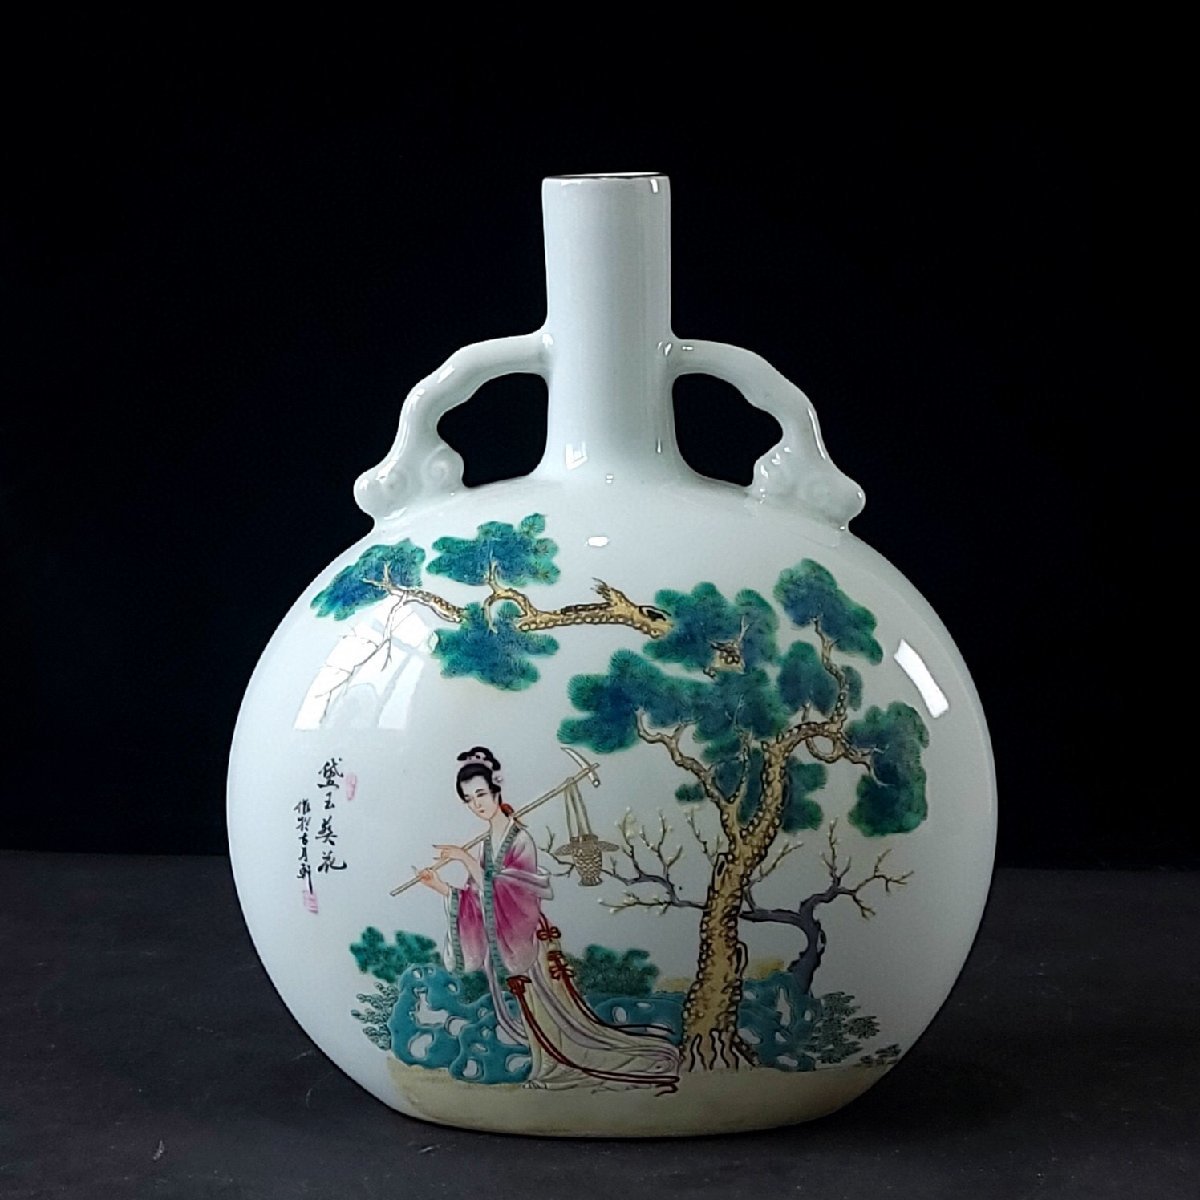 超歓迎された古置物極細工古陶瓷品抱月瓶王人物故事紋琺瑯彩雍正年製款